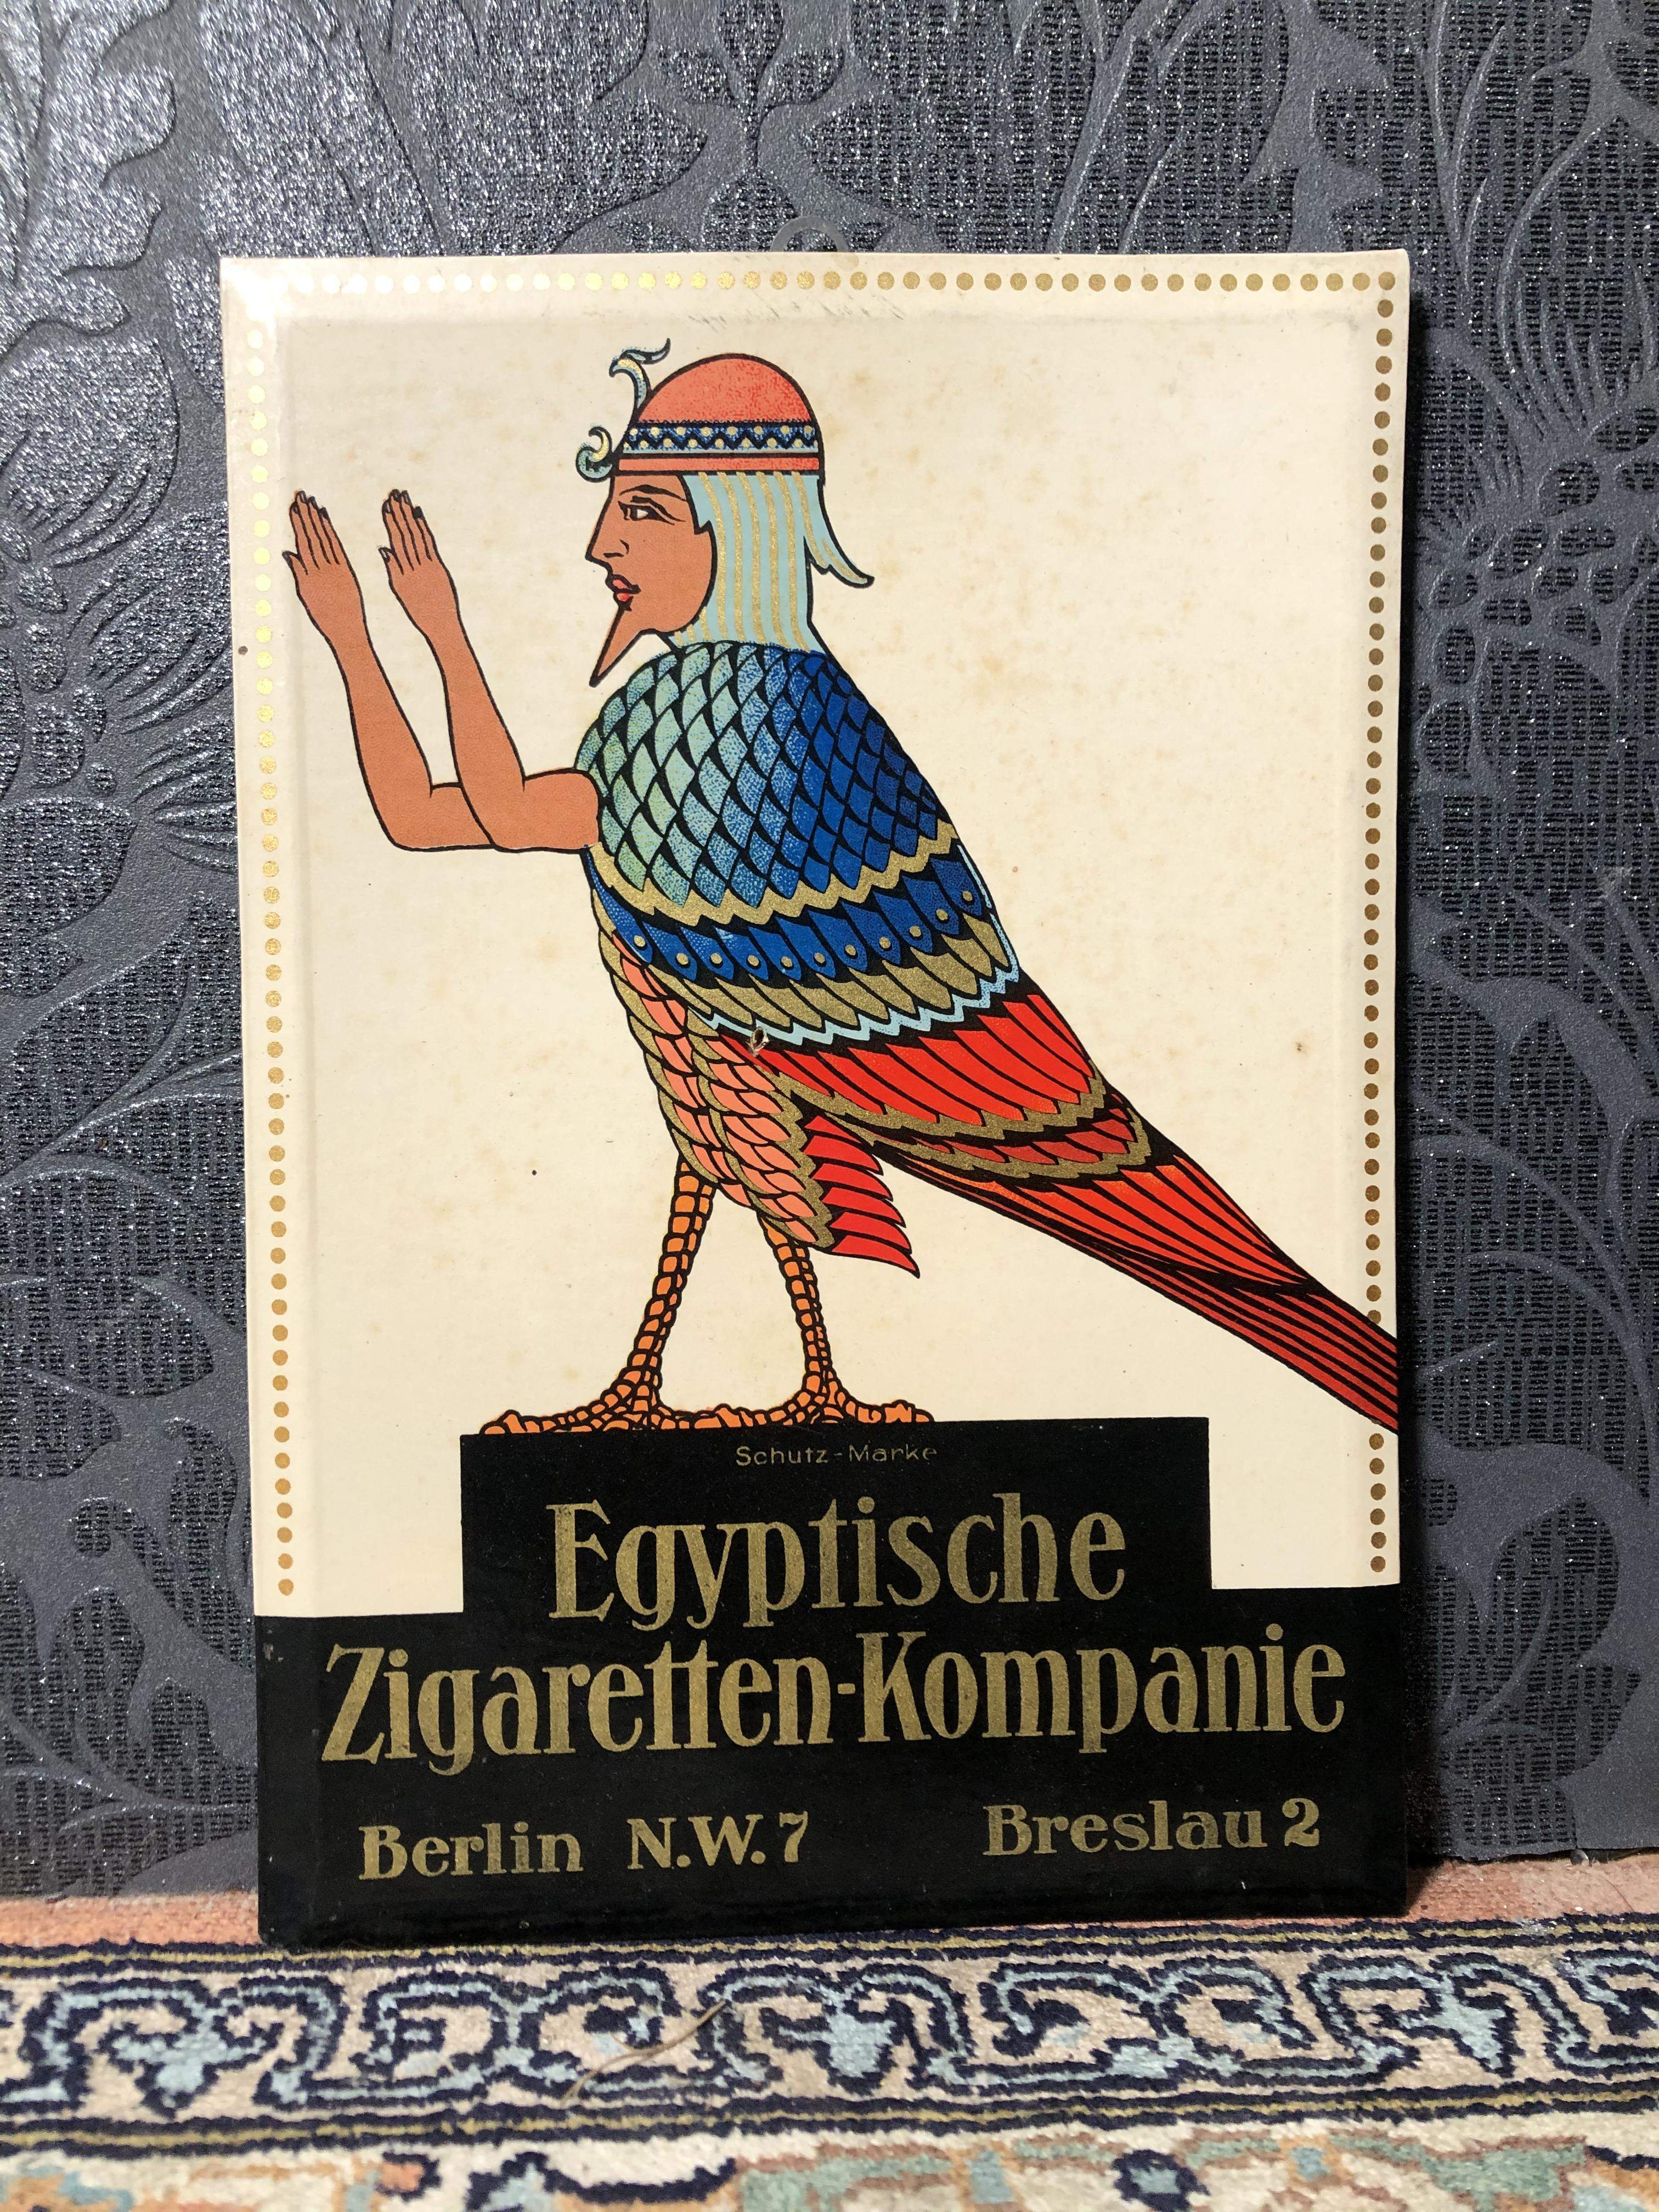 Egyptische Zigaretten Kompanie Schild (Similie Emaille)